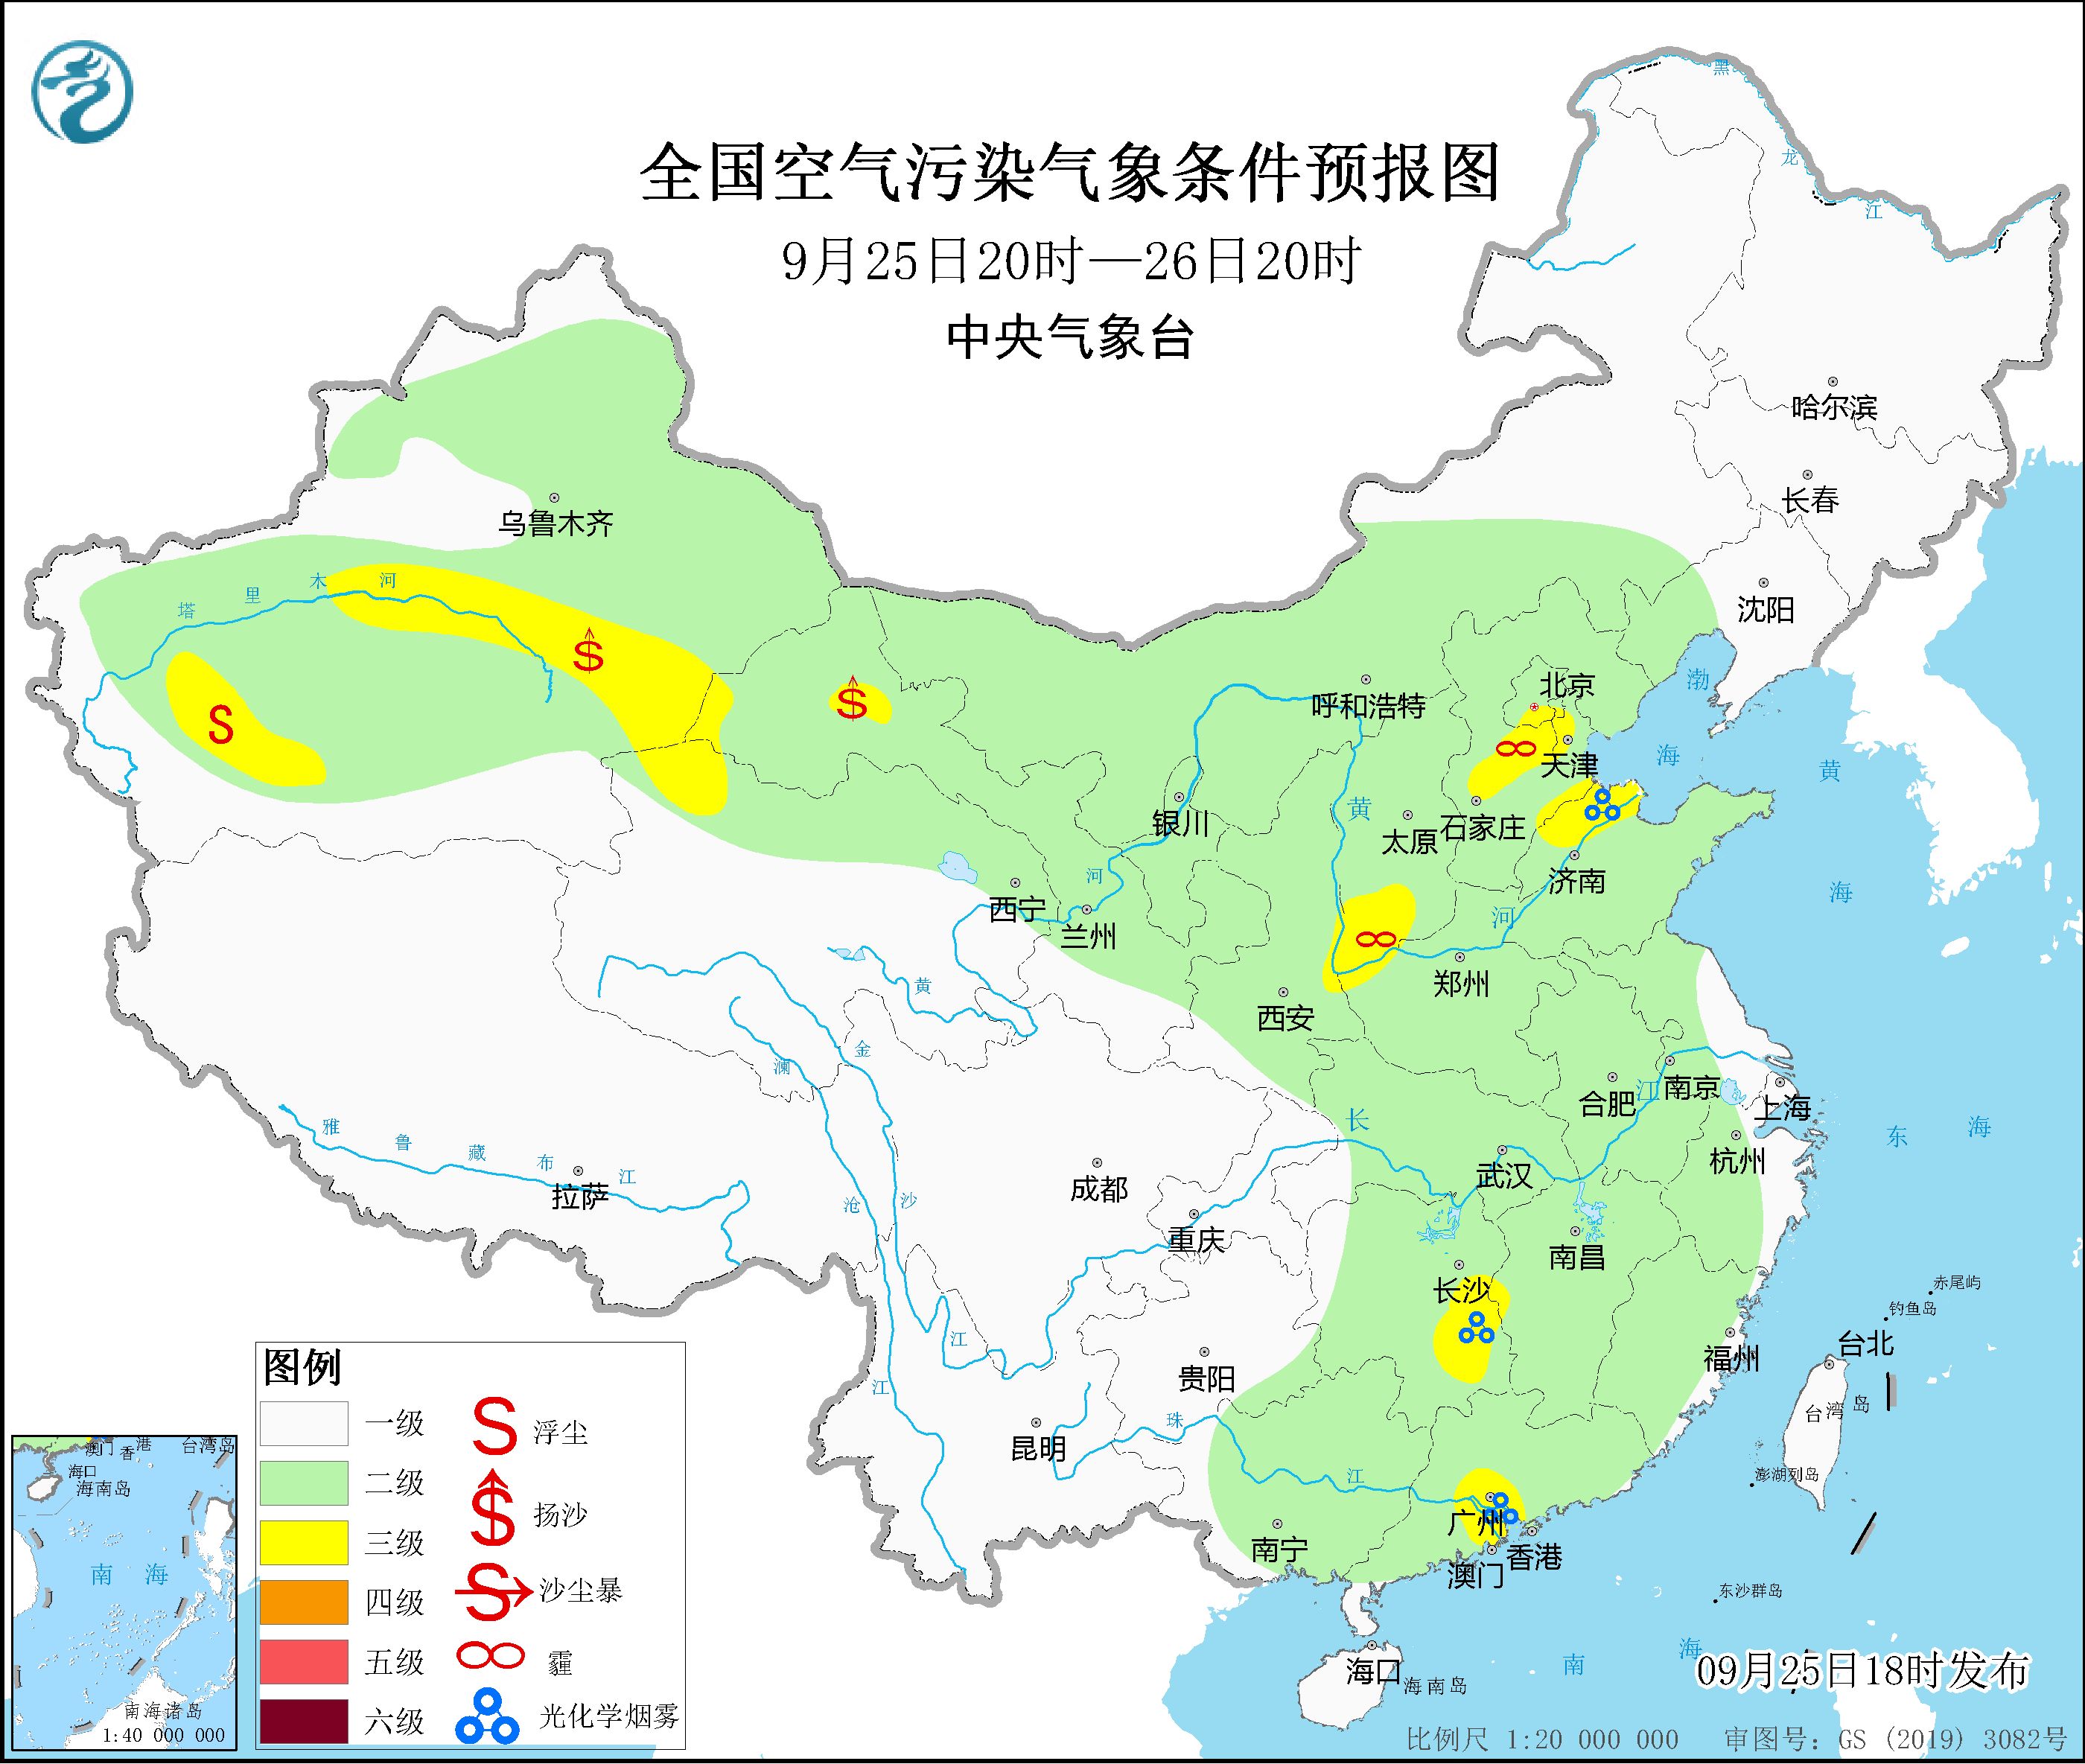 9月26至30日华北中南部大气扩散条件略转差